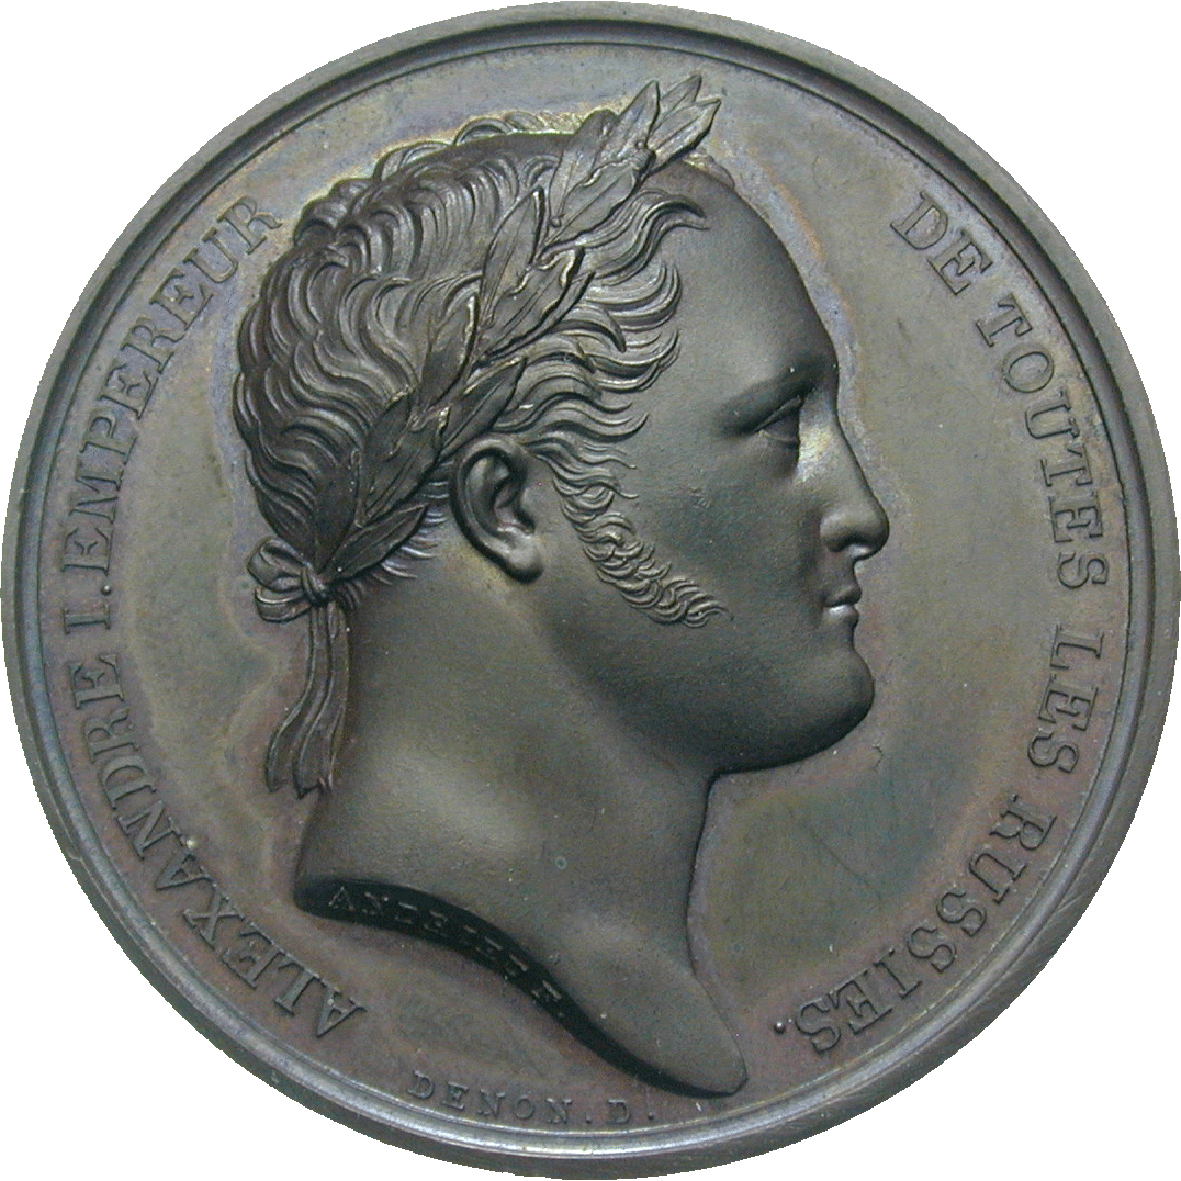 Zarenreich Russland, Alexander I., Medaille 1814 (obverse)